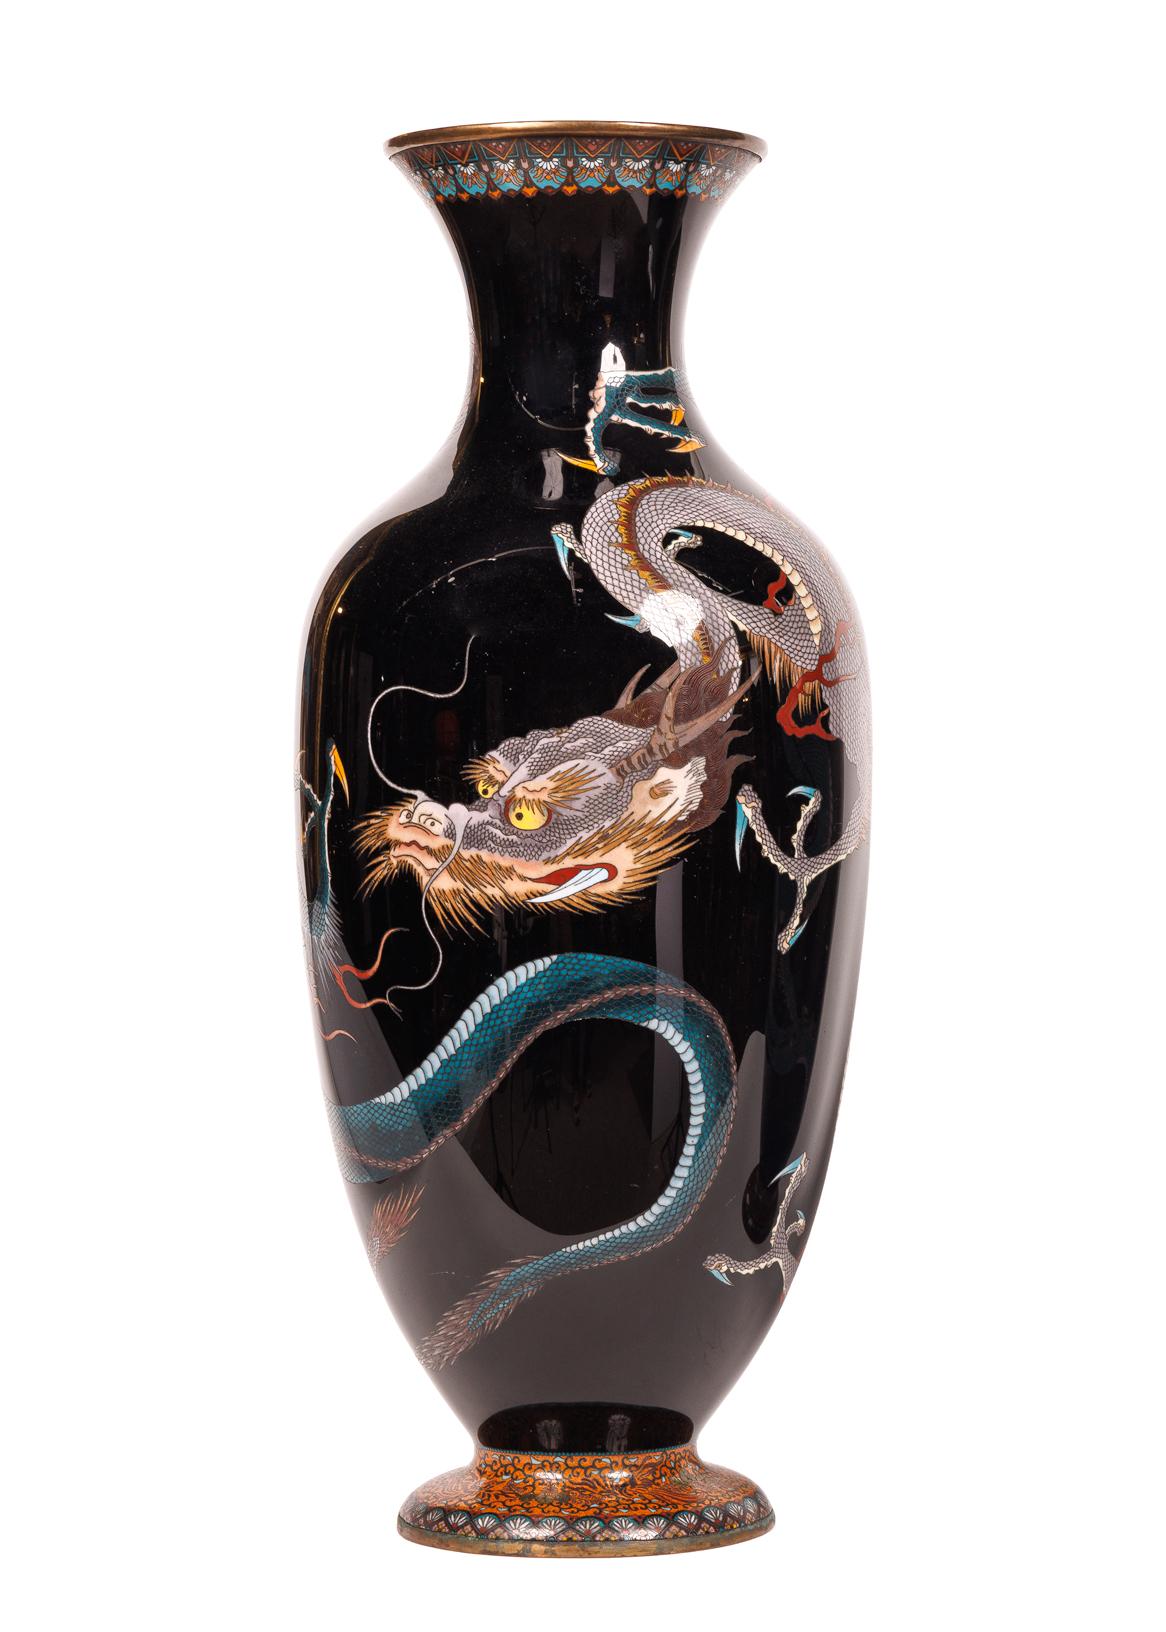 Grande paire de vases à double dragon en émail cloisonné de la période Meiji, 19e siècle.

Les vases dragon en émail cloisonné japonais sont très recherchés par les collectionneurs et les amateurs d'art du monde entier. Ces vases ont été fabriqués